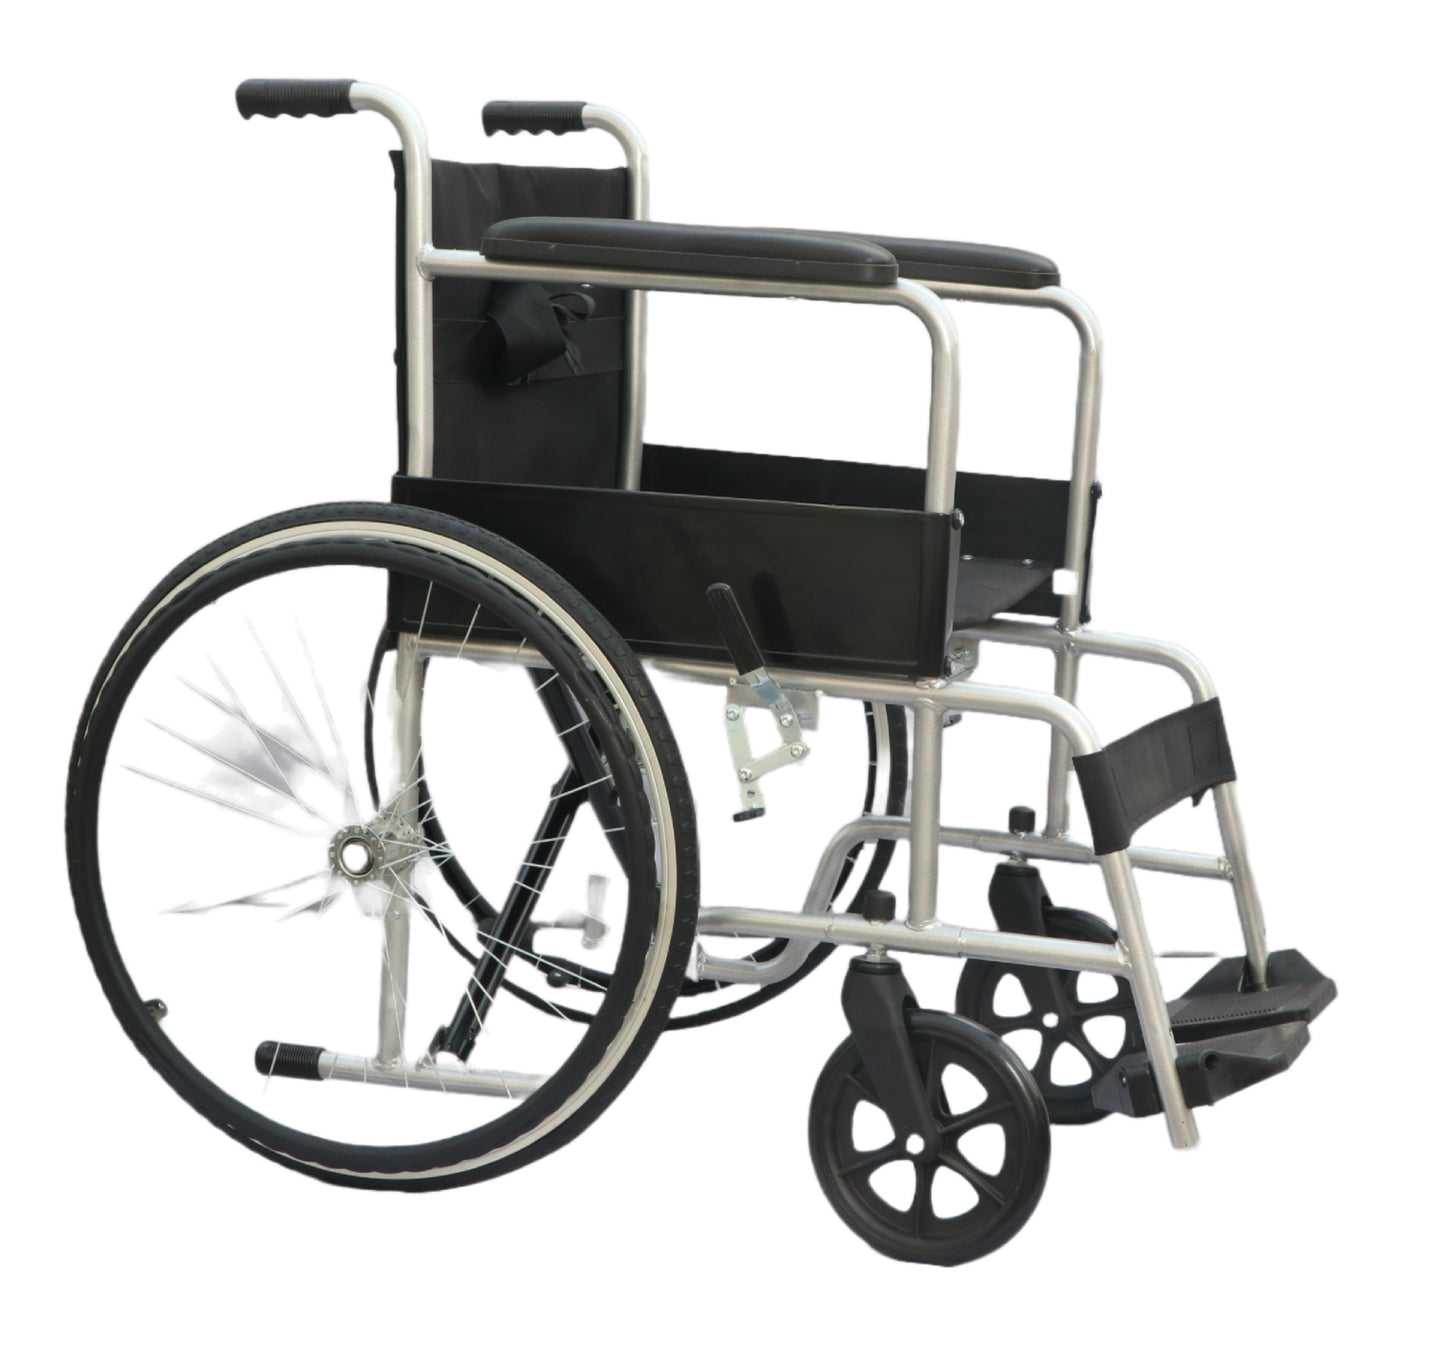 Anrace Spoke Wheelchair Silver